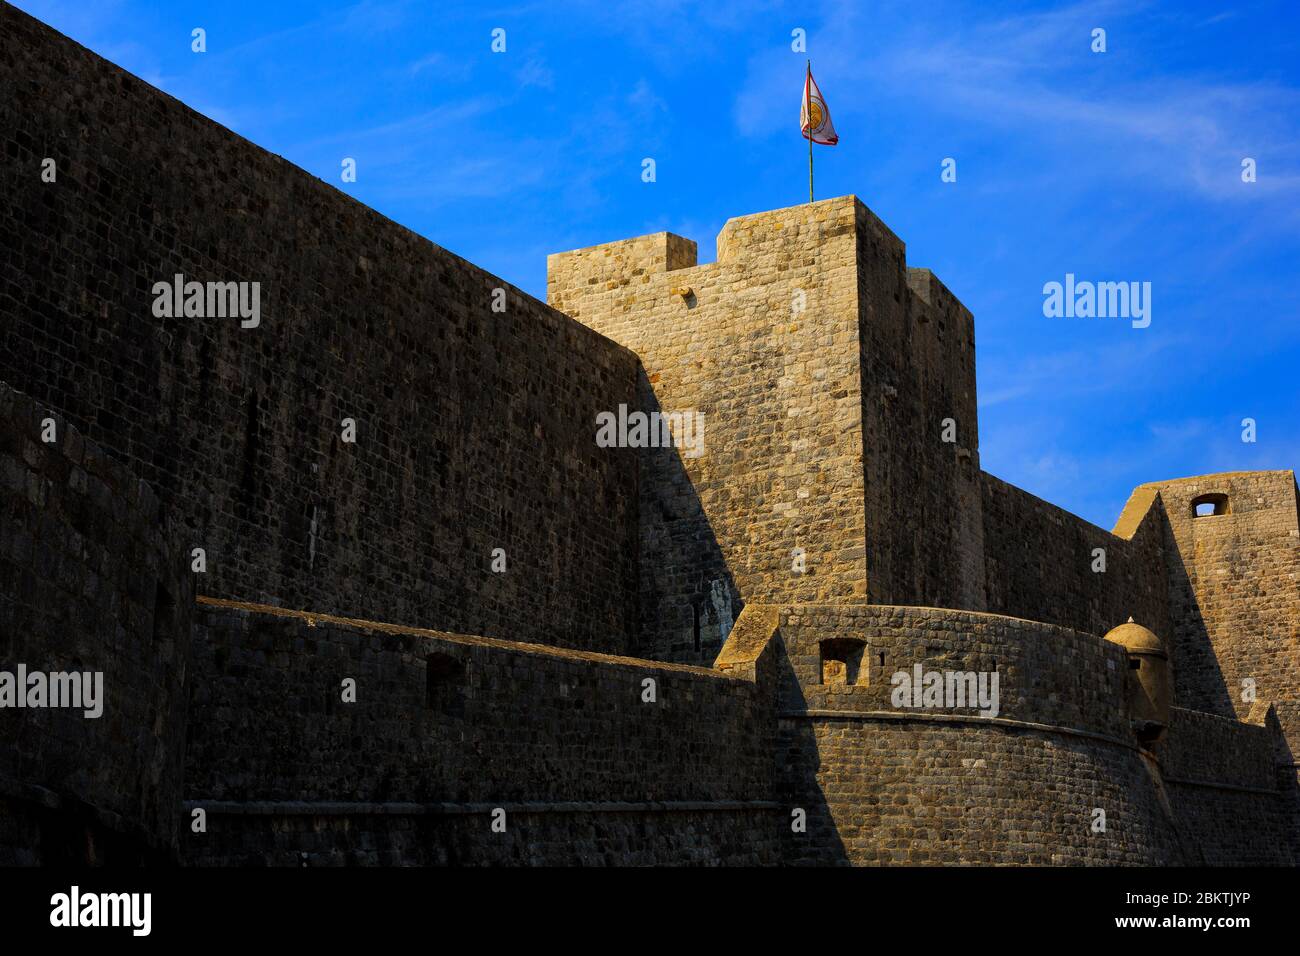 Le drapeau croate survole les murs fortifiés de la vieille ville de Dubrovnik, Croatie, le 1er septembre 2019. Banque D'Images